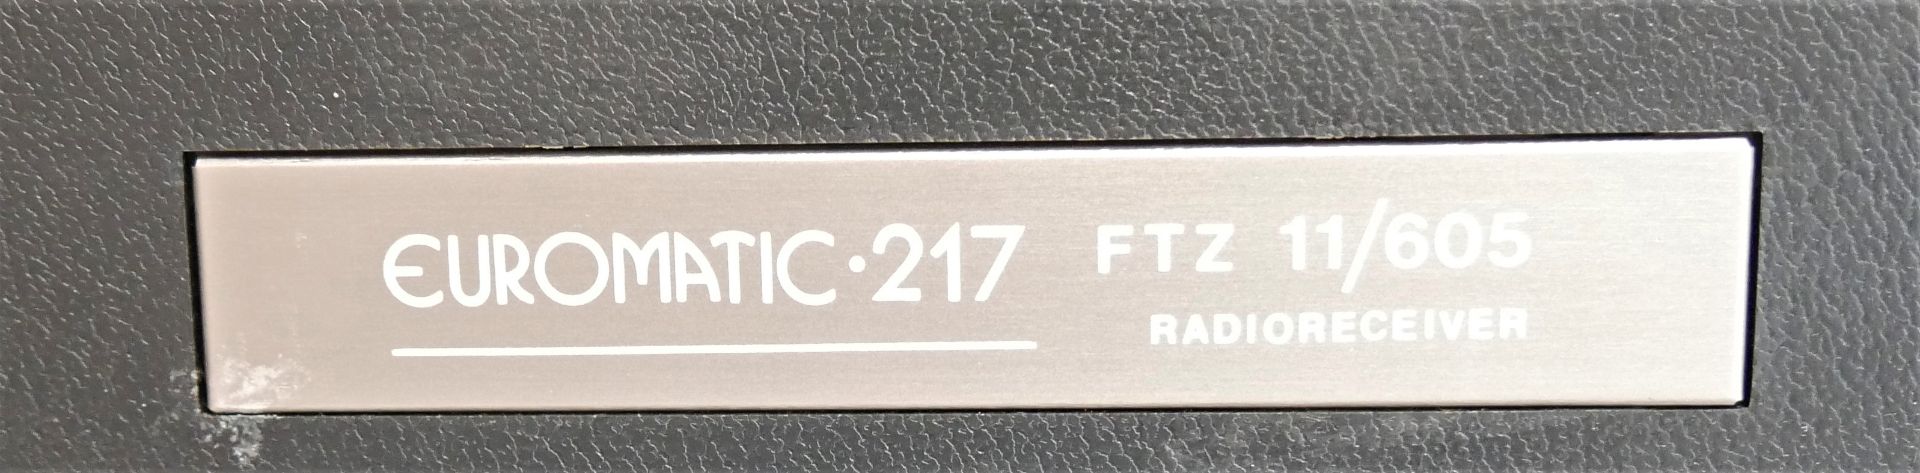 Transistor Radio Euromatic 217 mit Bedienungsanleitung. Kabel nicht vorhanden. Funktion nicht - Bild 4 aus 4